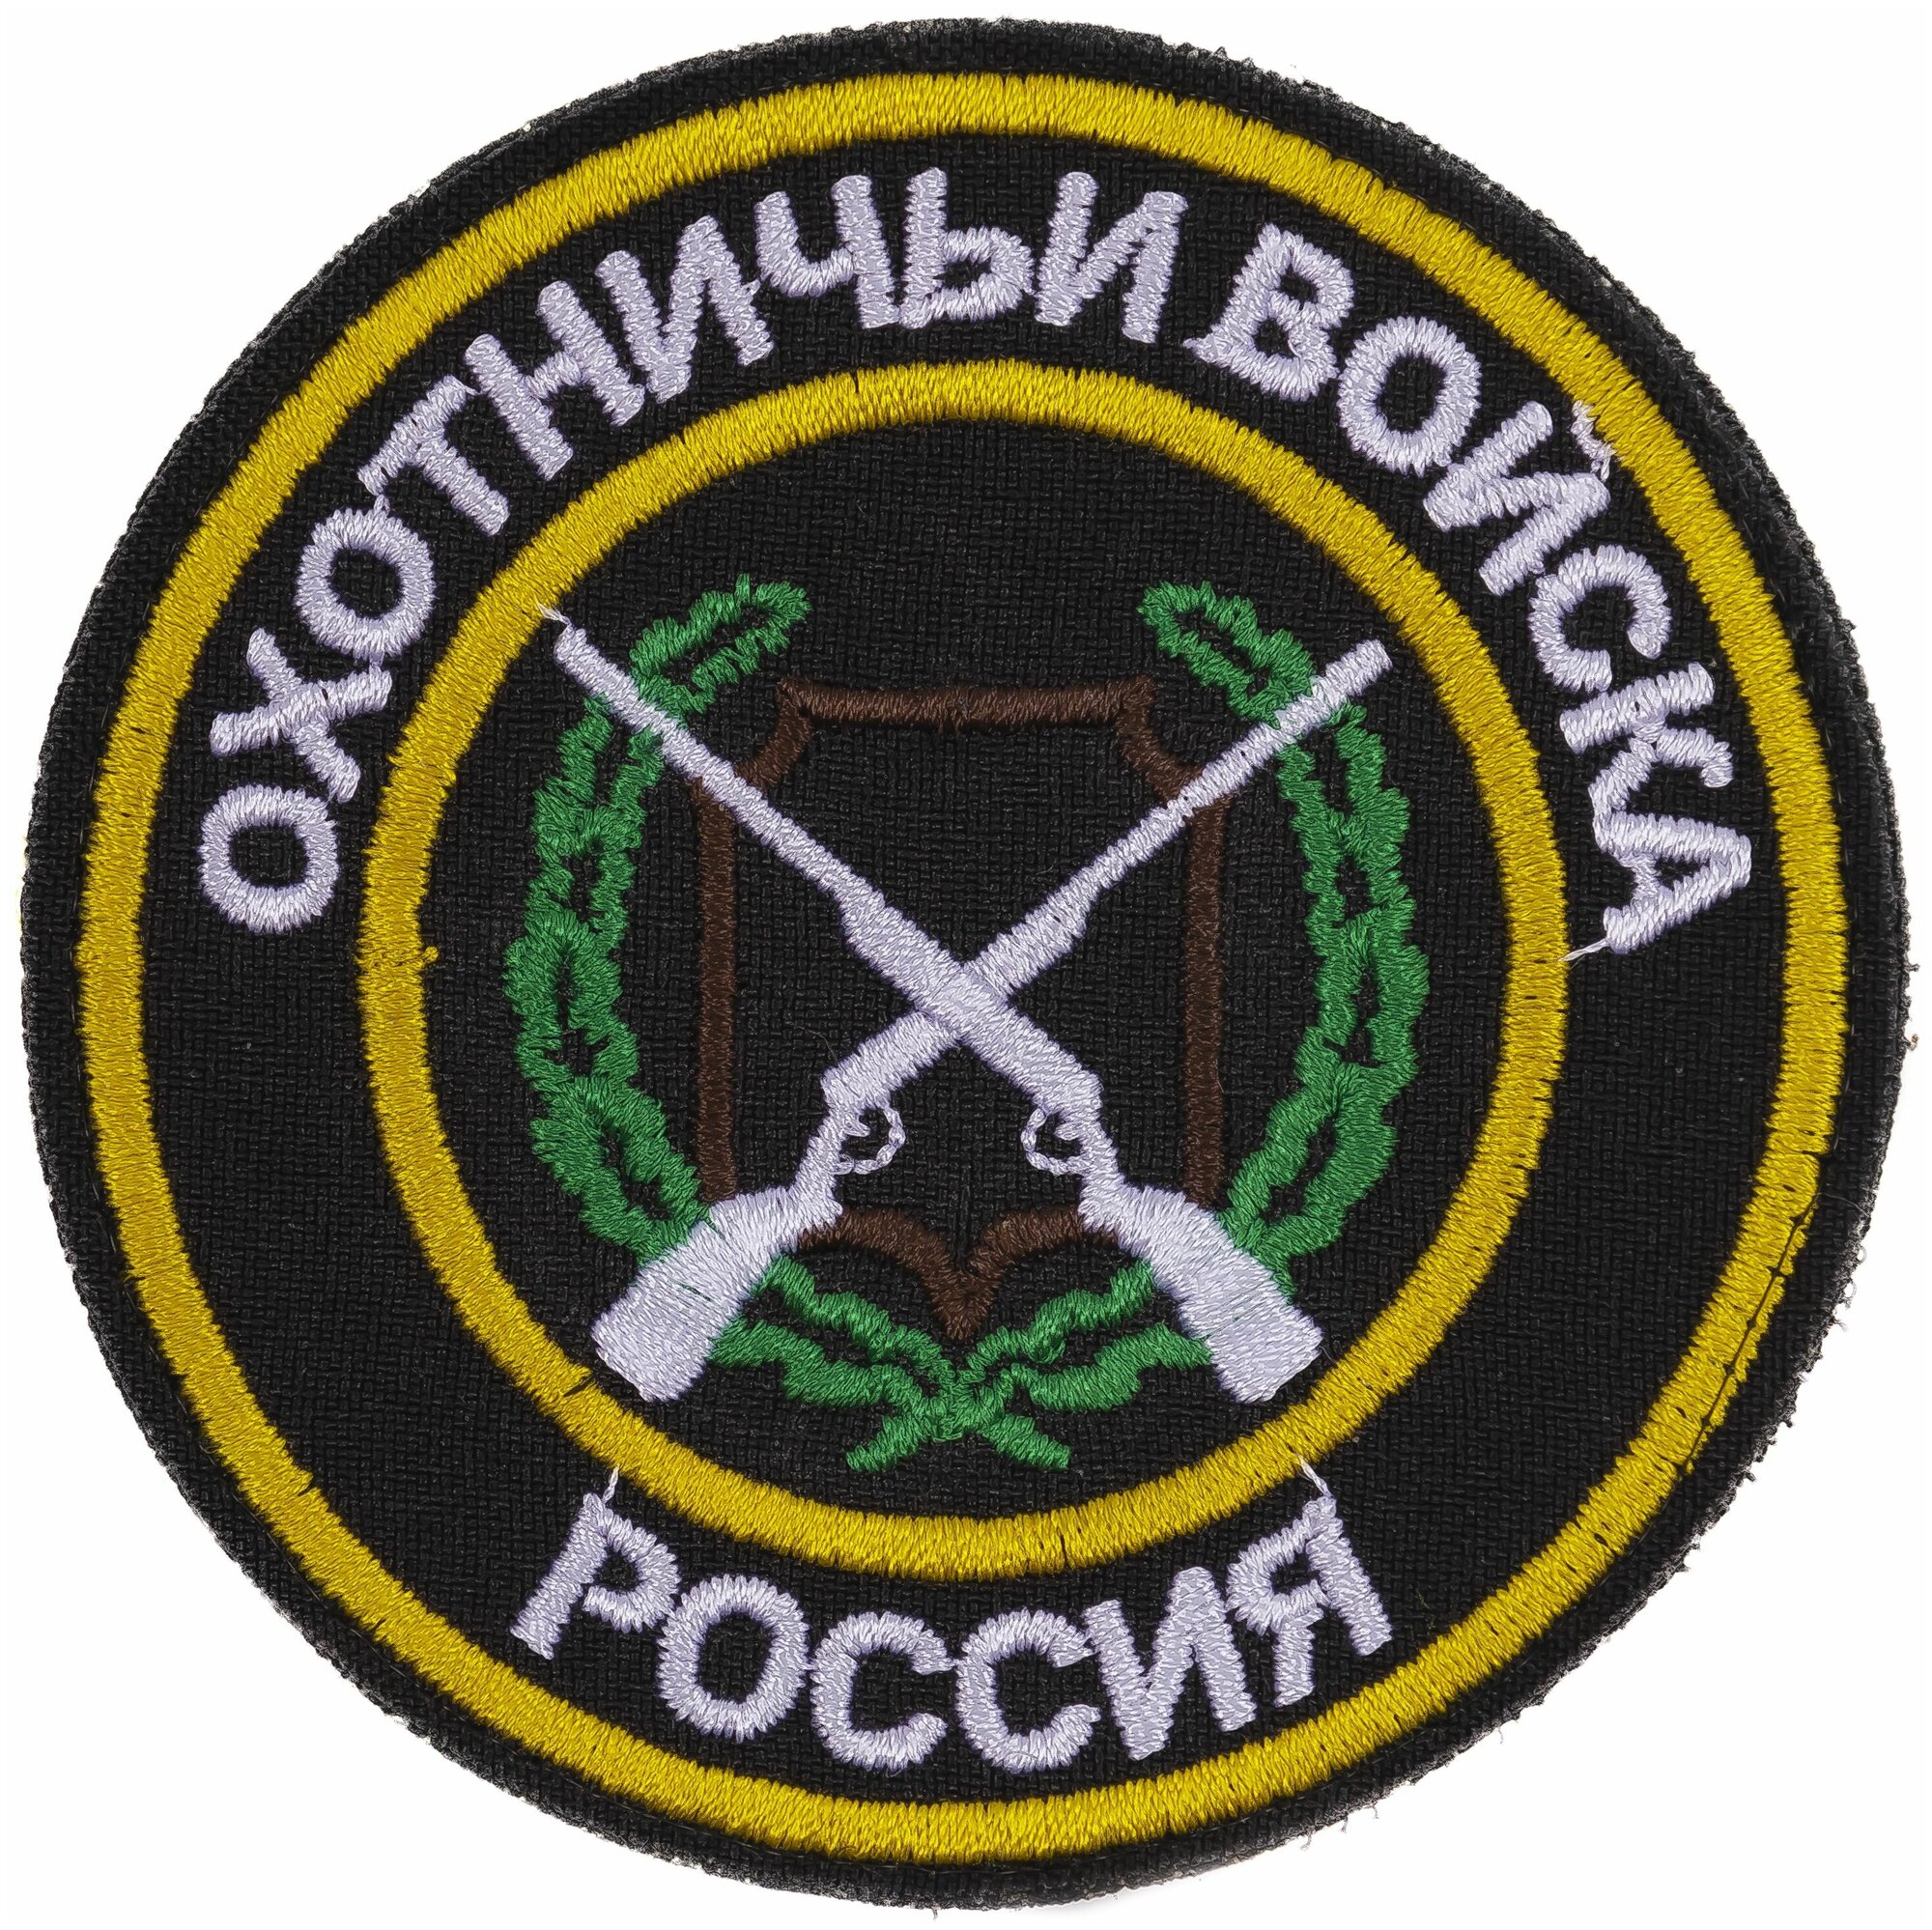 Нашивка, шеврон, патч (patch) на липучке Охотничьи войска Россия, размер 8,5*8,5 см